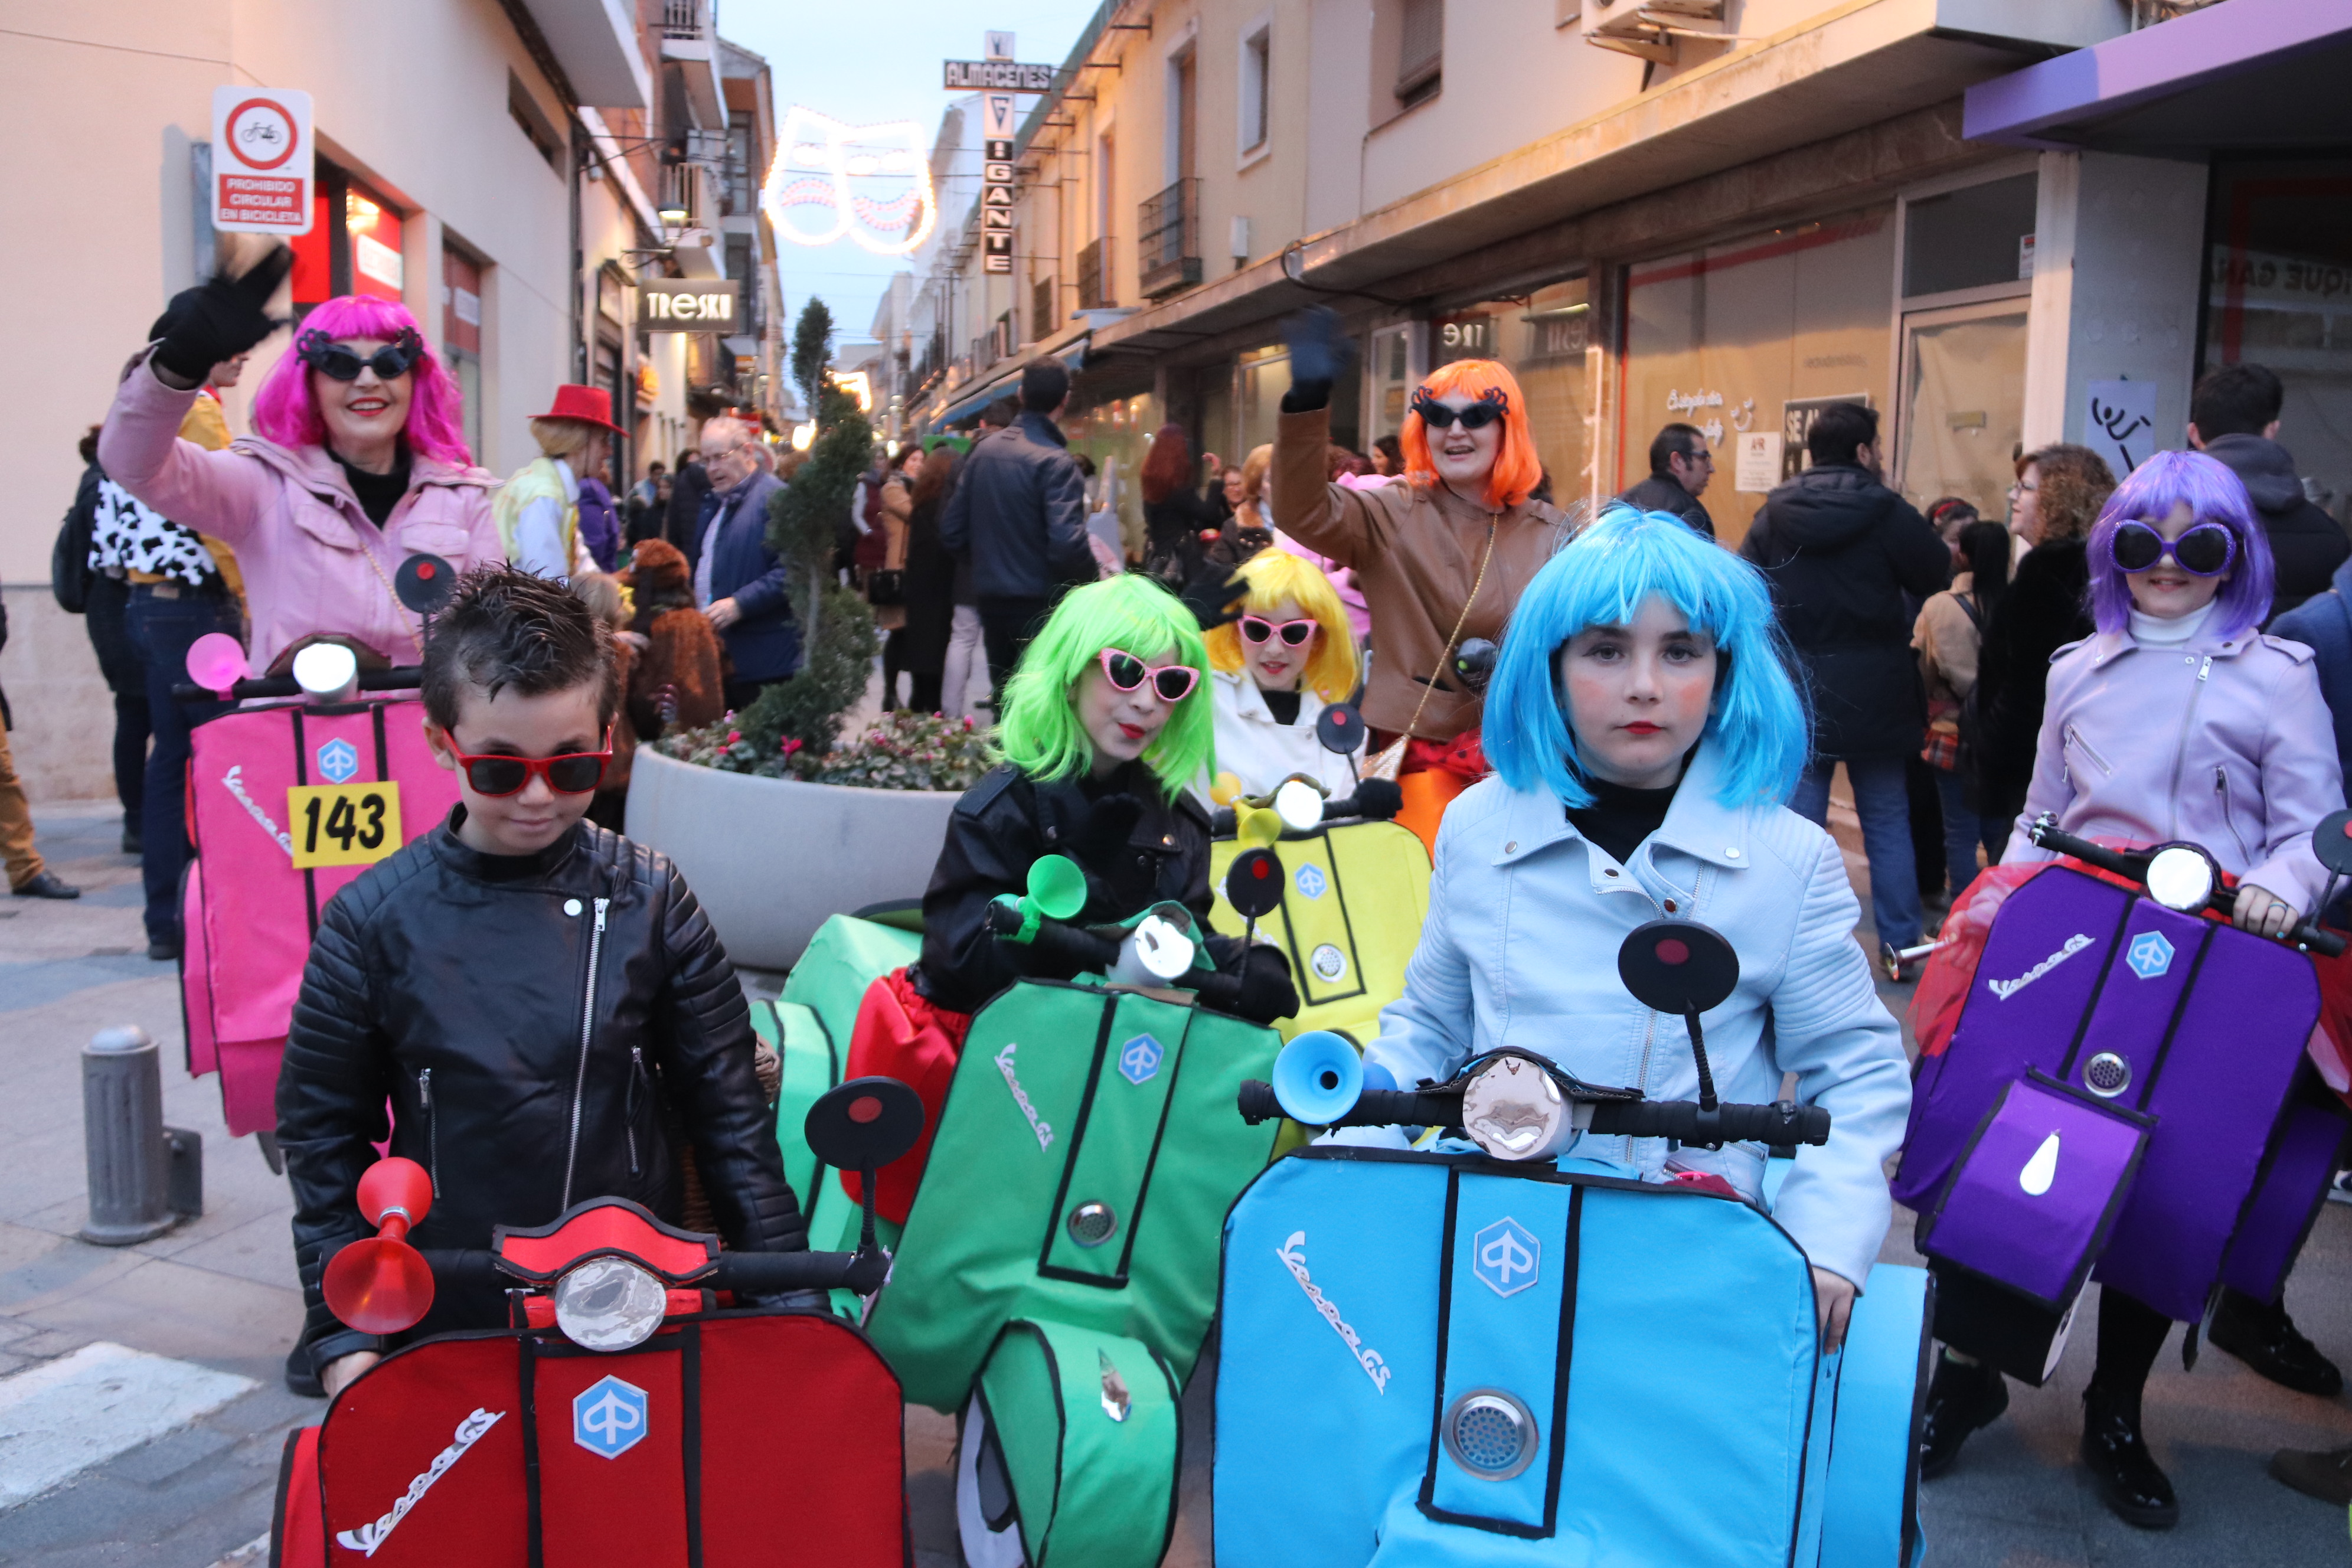 El concurso de máscaras llenó de color (y humor) la calle Empedrada